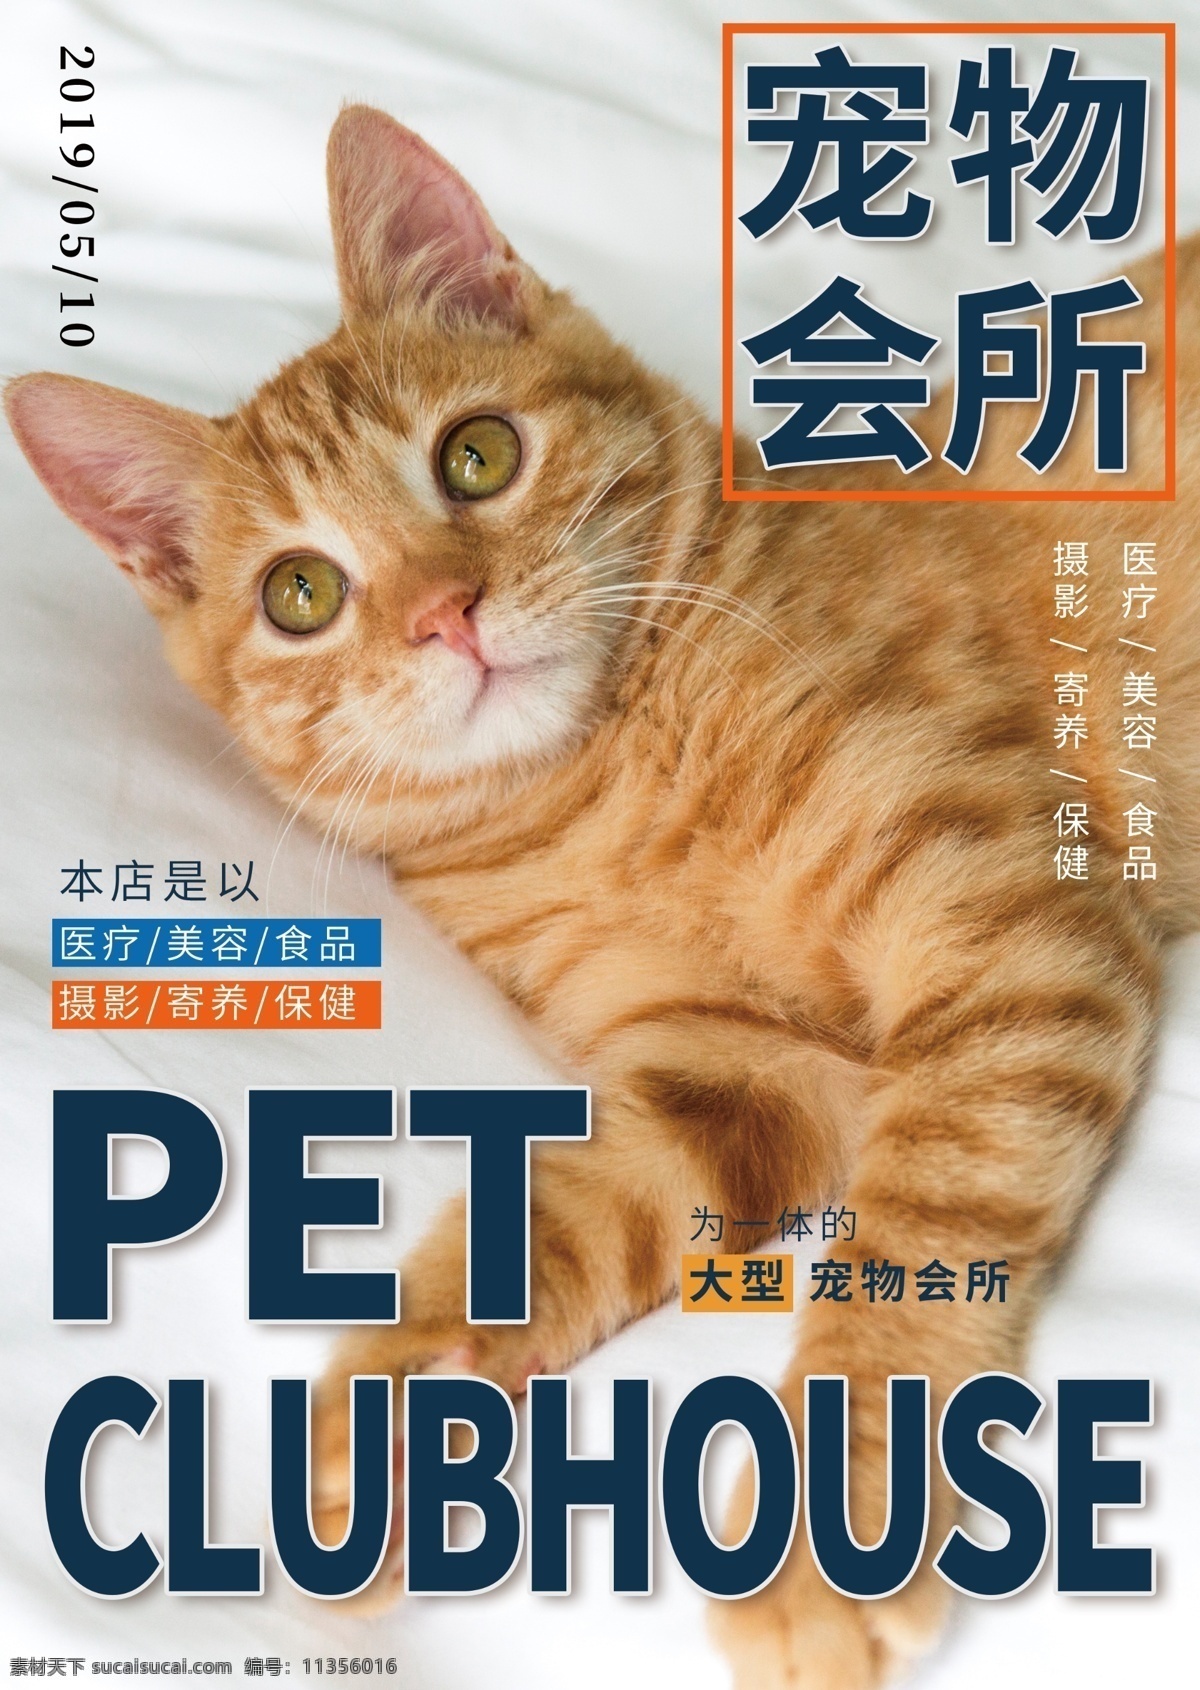 时尚 猫咪 宠物 单 页 猫咪杂志 宠物杂志 宠物单页 宠物店单页 宠物海报 萌宠海报